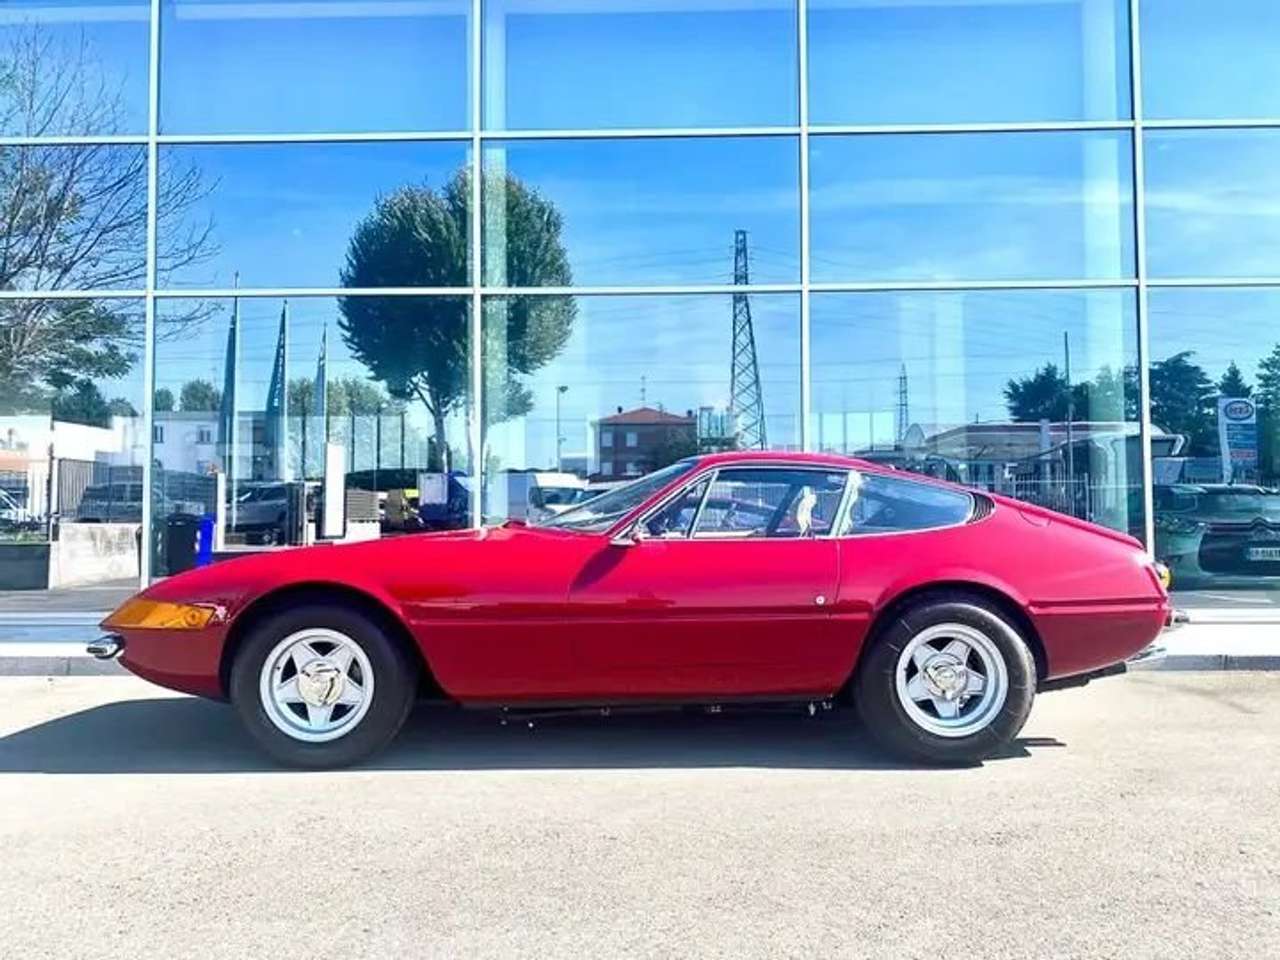 Ferrari Daytona 365 GTB 4